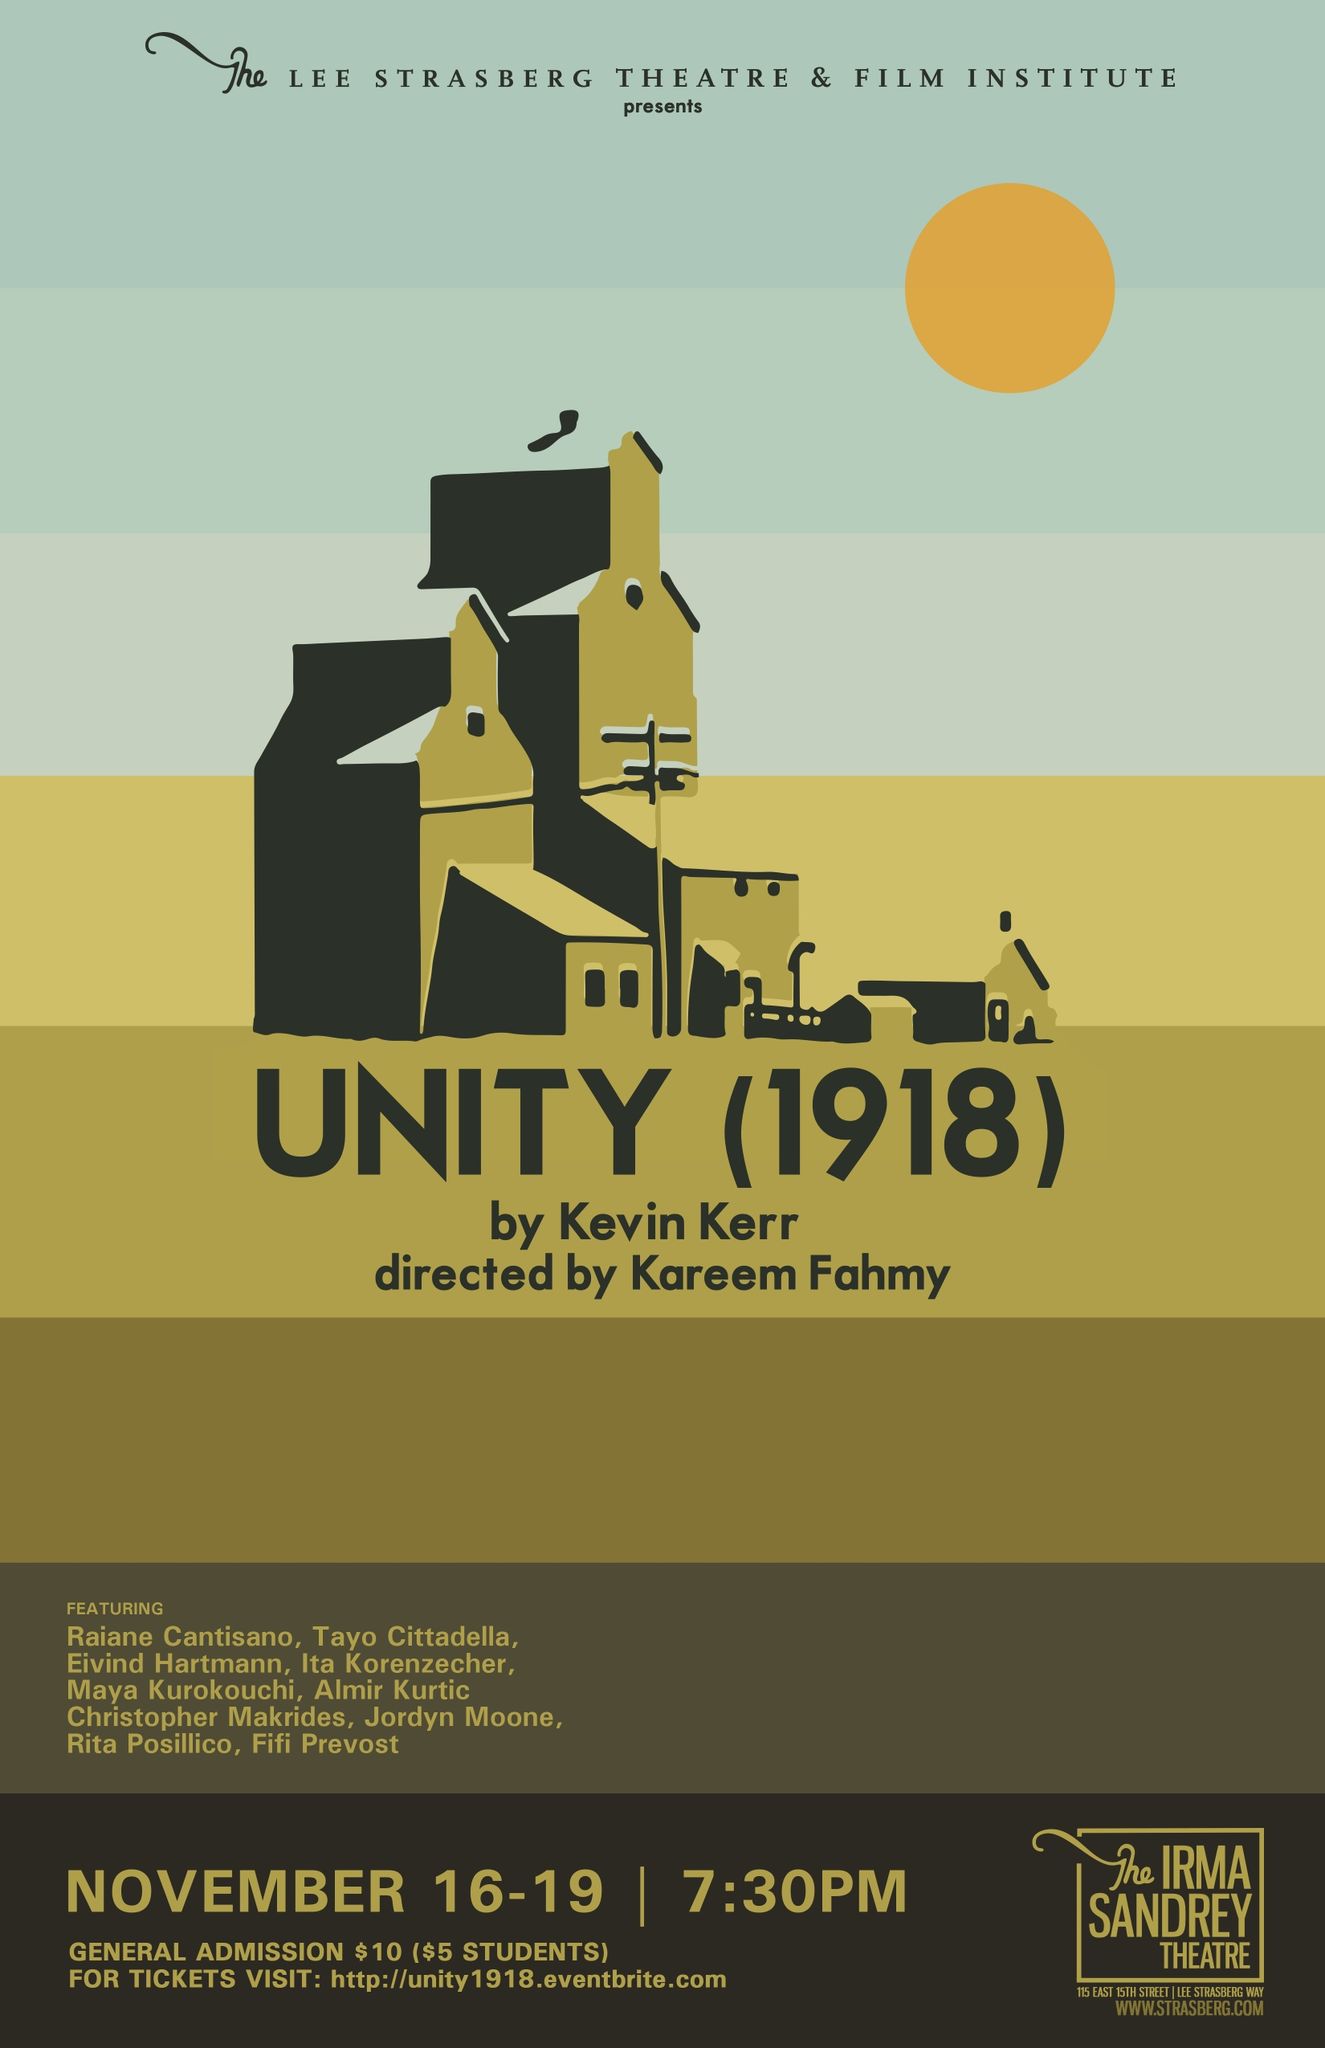 UNITY (1918)